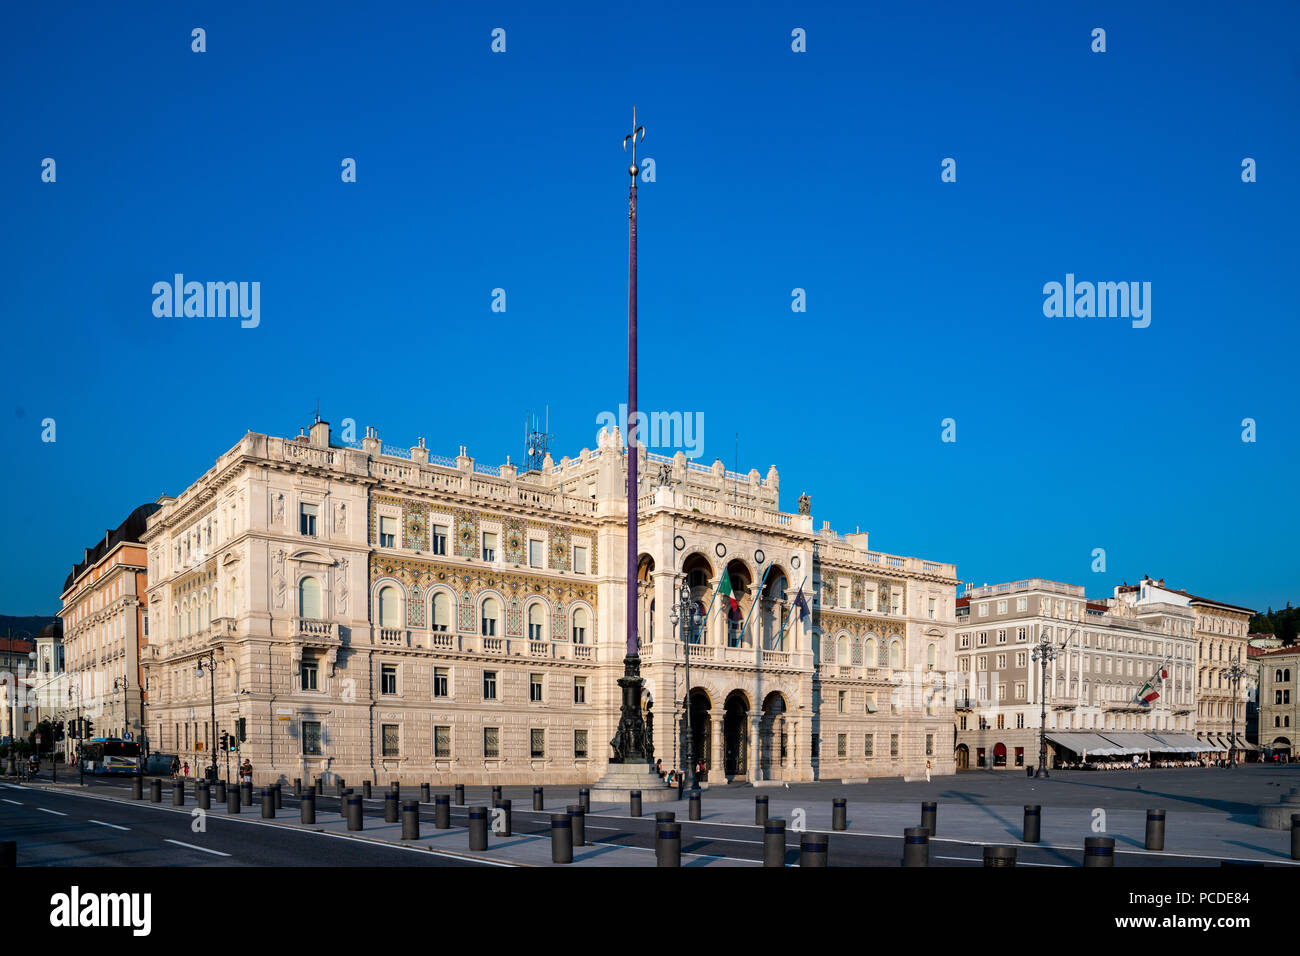 Trieste, 31 luglio 2018. La regione di Trieste palazzo del governo a Trieste in Piazza Unità d'Italia. Il palazzo, costruito tra il 1901 e il 1905, è kn Foto Stock